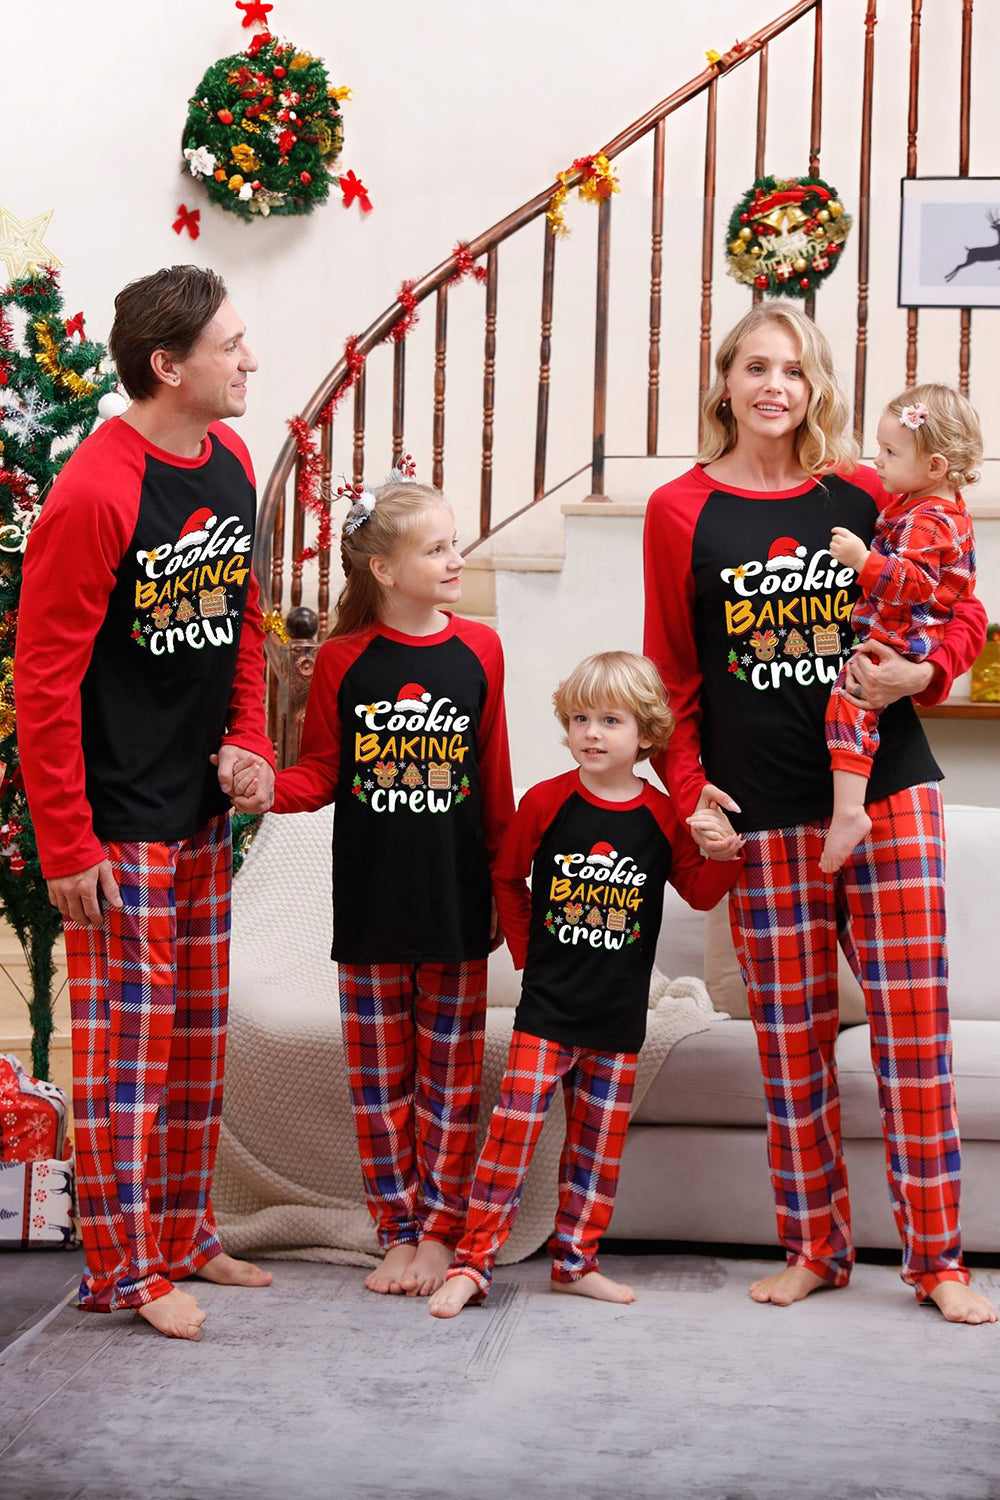 Conjuntos de pijamas navideños a juego con cuadros rojos familiares